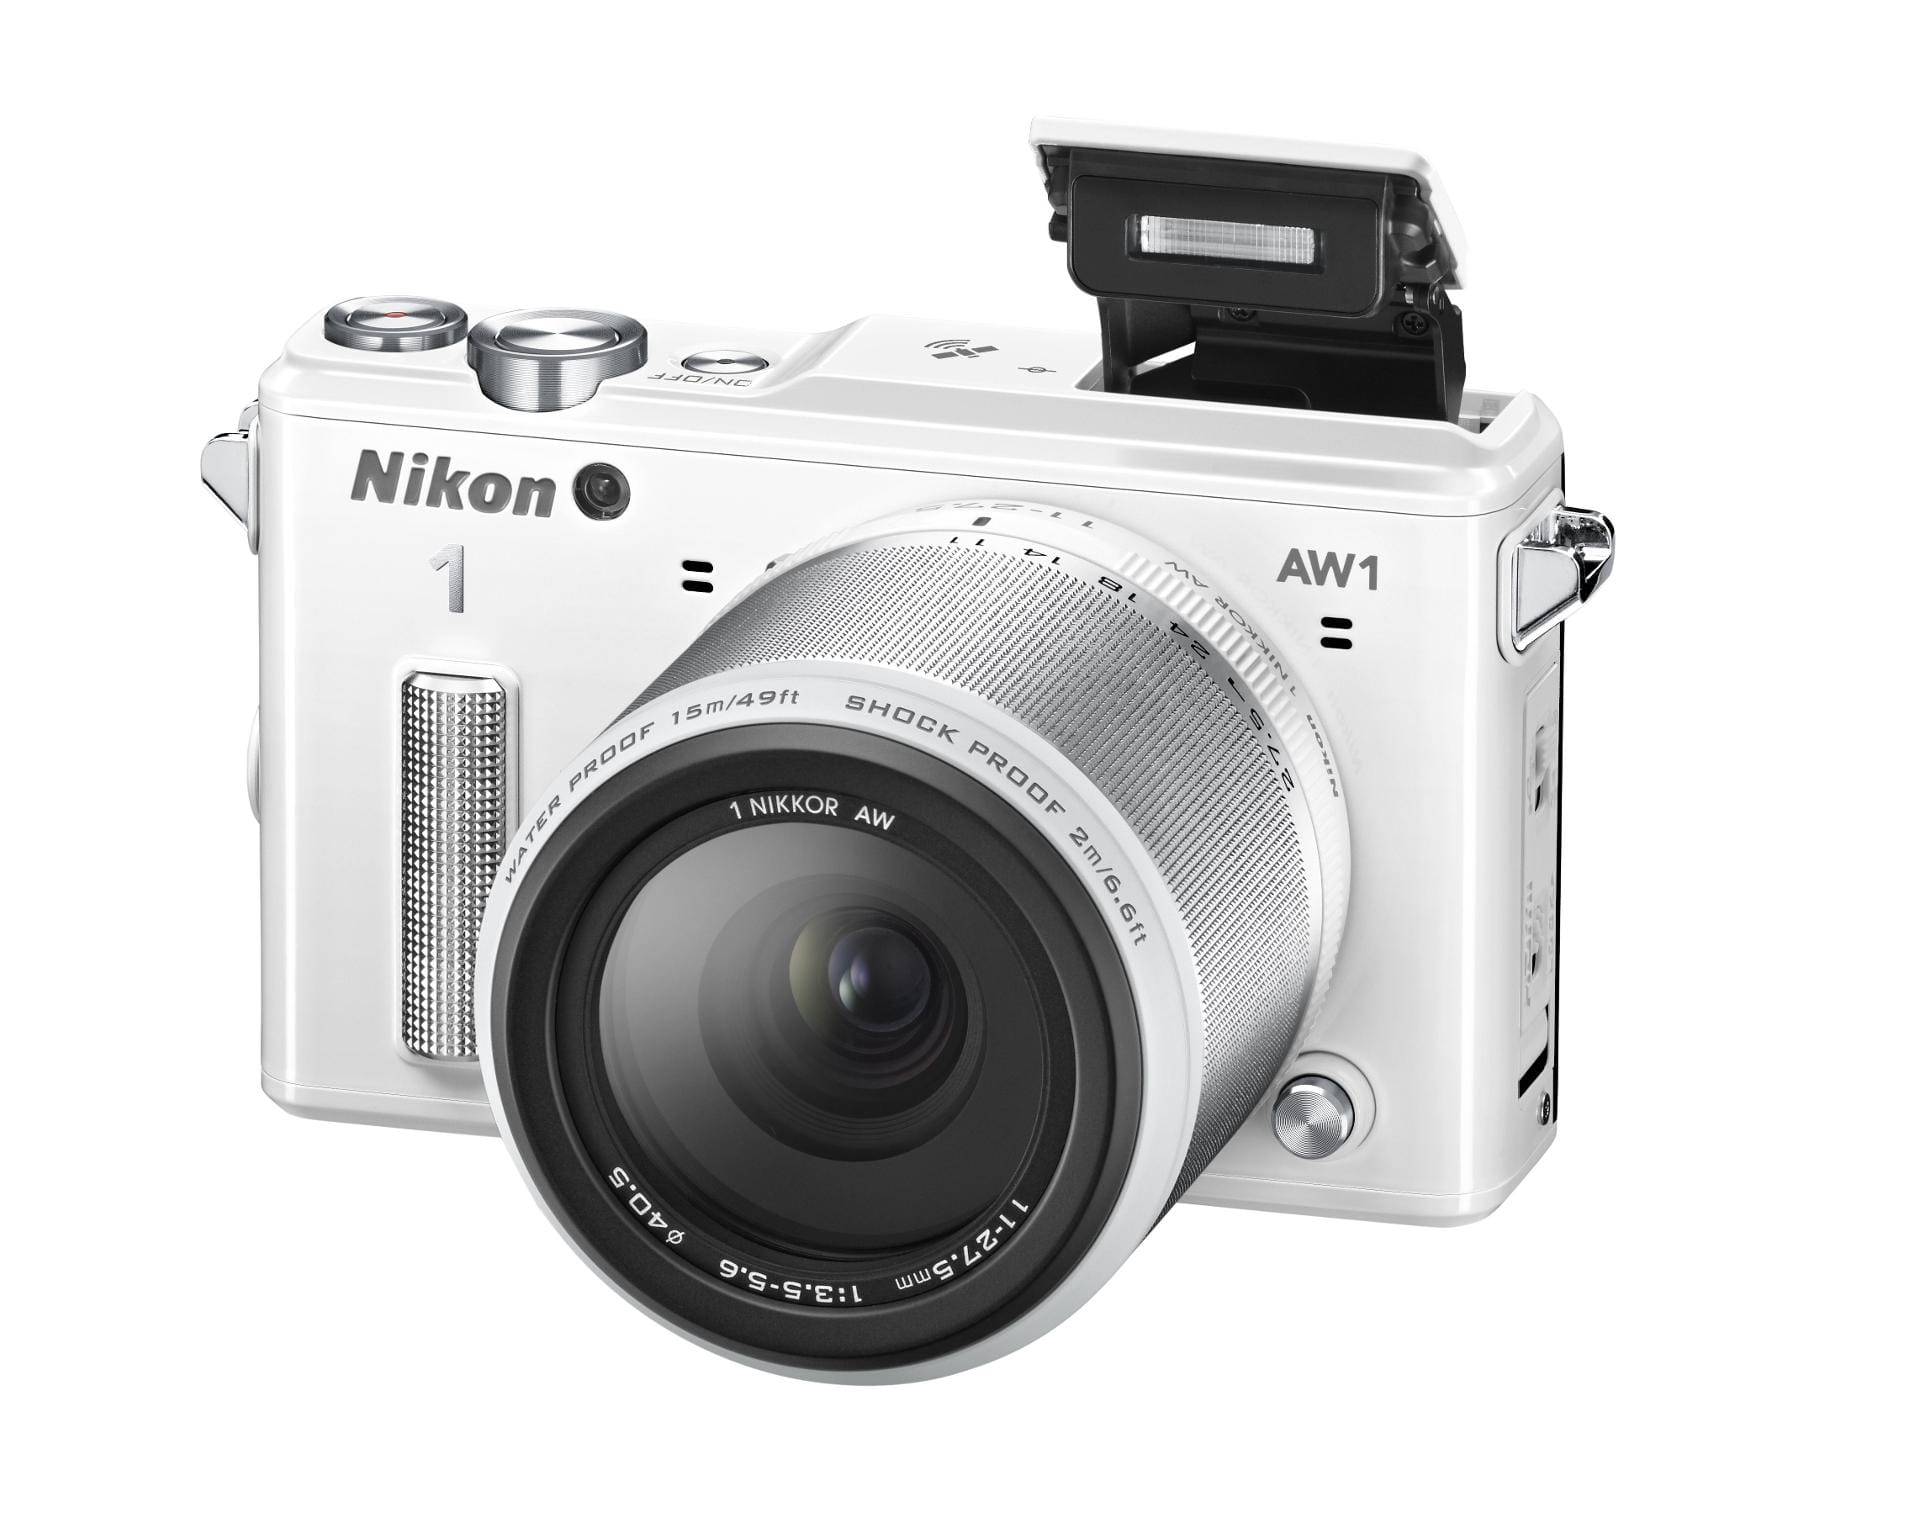 Die Nikon 1 AW1 für rund 700 Euro bietet zwar gute Objektive, ist aber nur bis 15 Meter wasserdicht. Zum Fotografieren beim Schnorcheln und Abtauchen ist sie recht gut geeignet, aber nicht für ambitionierte Taucher.